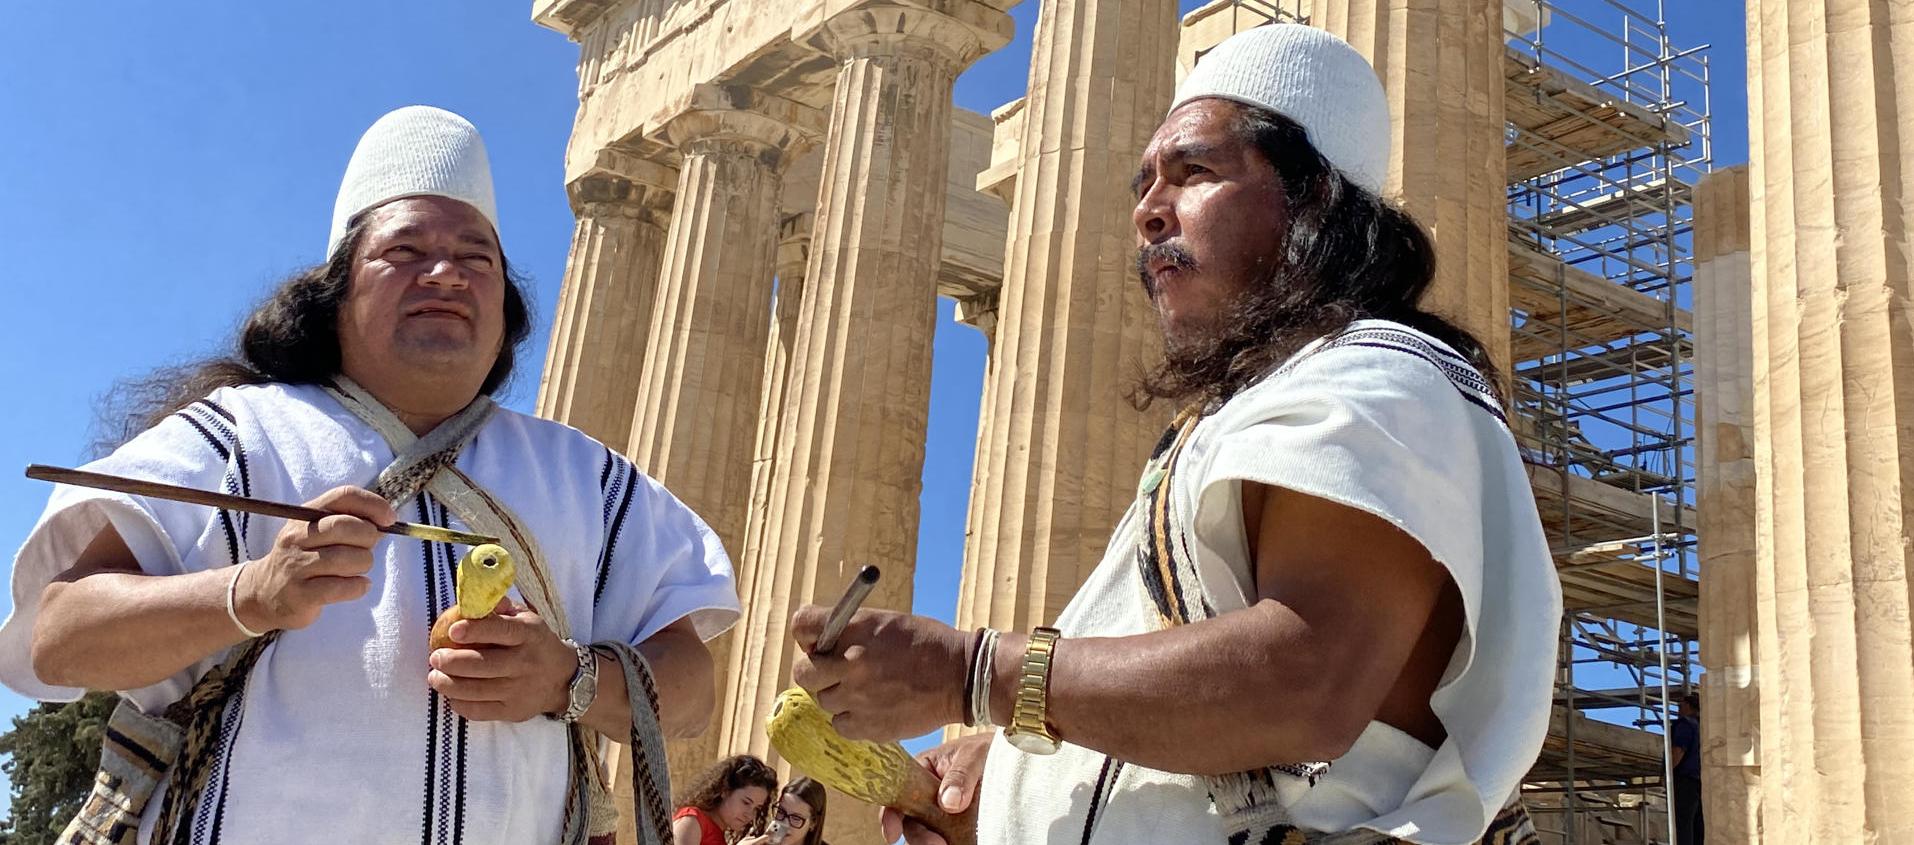 Los líderes arhuacos Noel Torres Izquierdo y Luis Salcedo, frente al templo del Partenón en la Acrópolis de Atenas